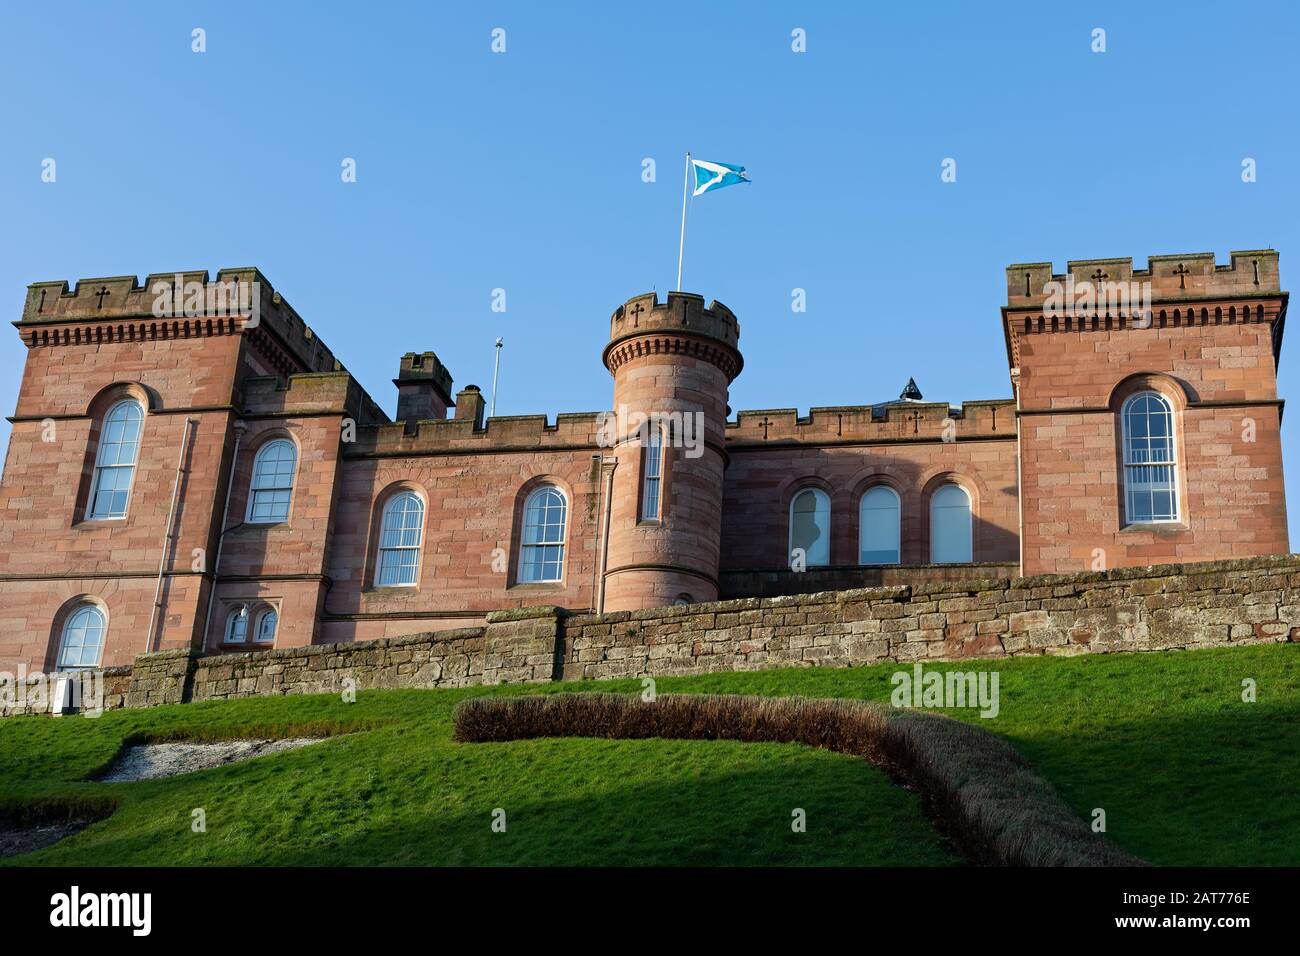 Picture of Inverness Castle in Scotland, United Kingdom Stock Photo